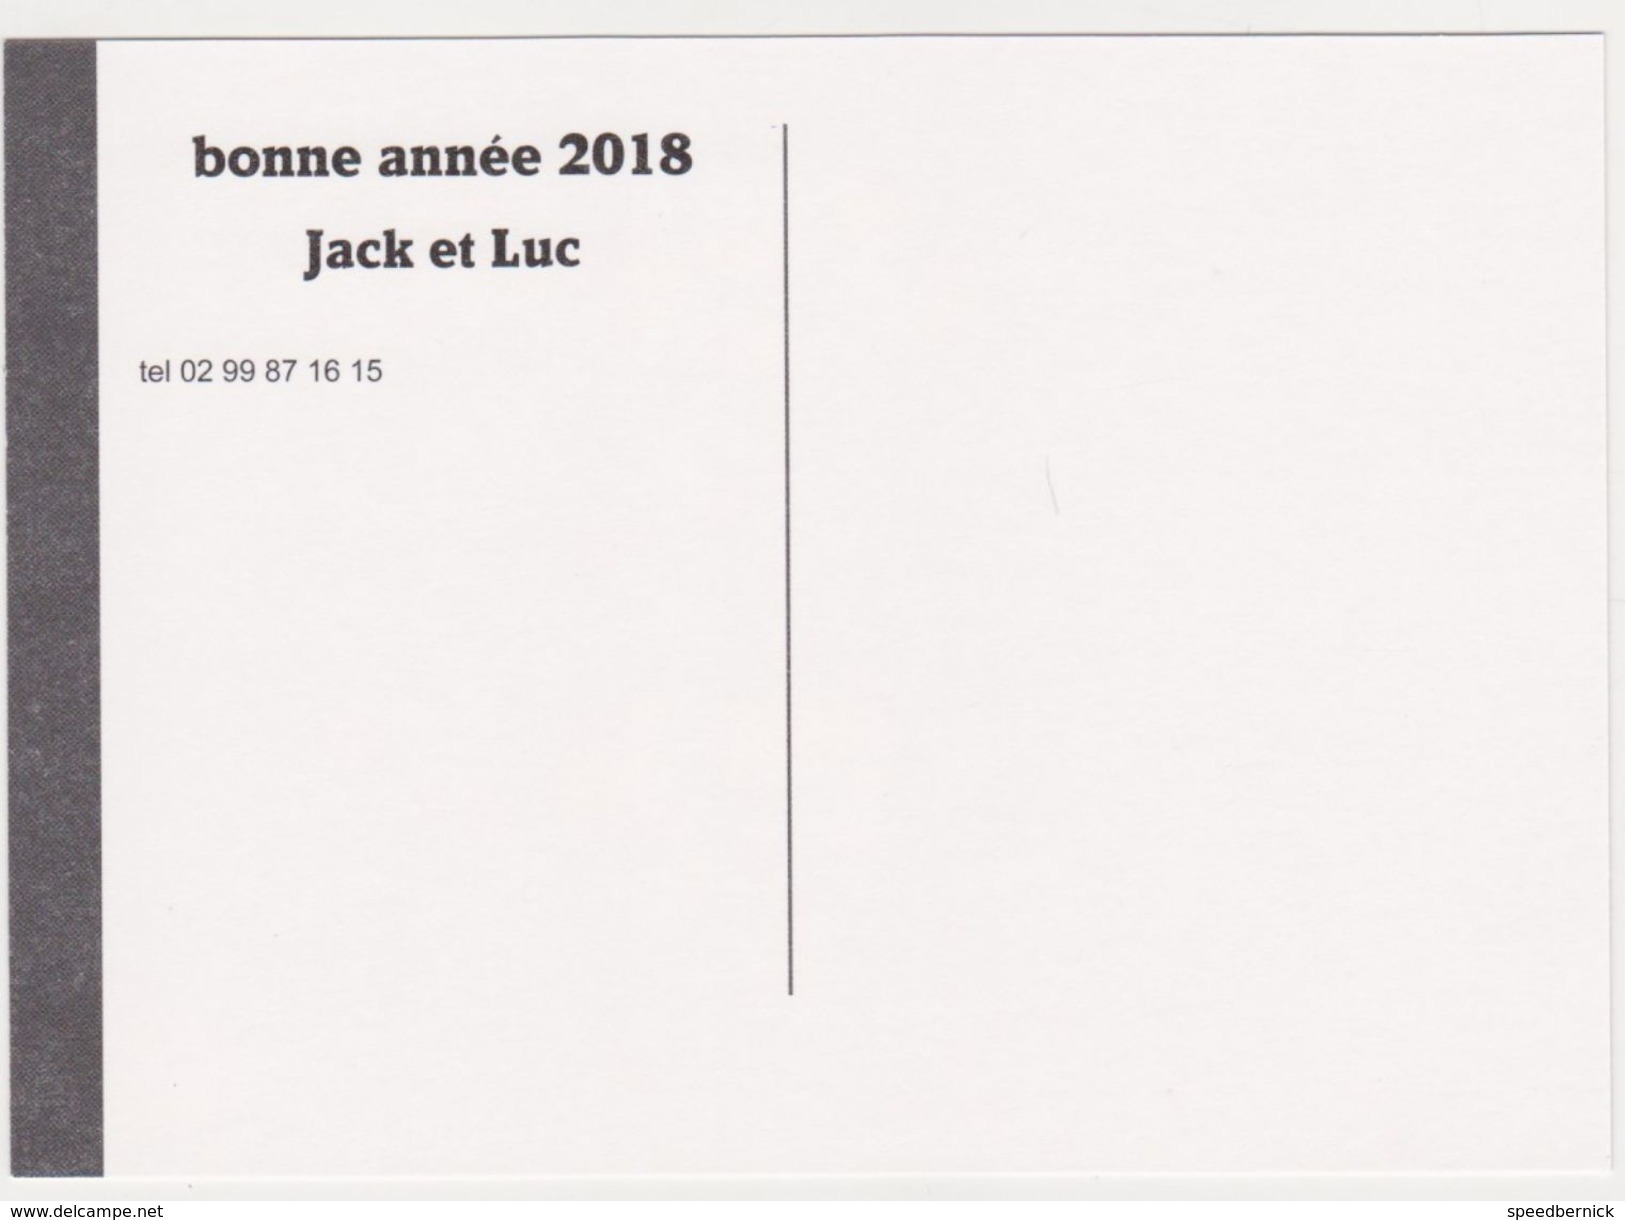 Rennes 35 Place Rue Hoche Marchand Marron Chataigne Locomotive -Noel 2017 -bonne Année 2018 -Jacques Luc Ars Pull - Rennes